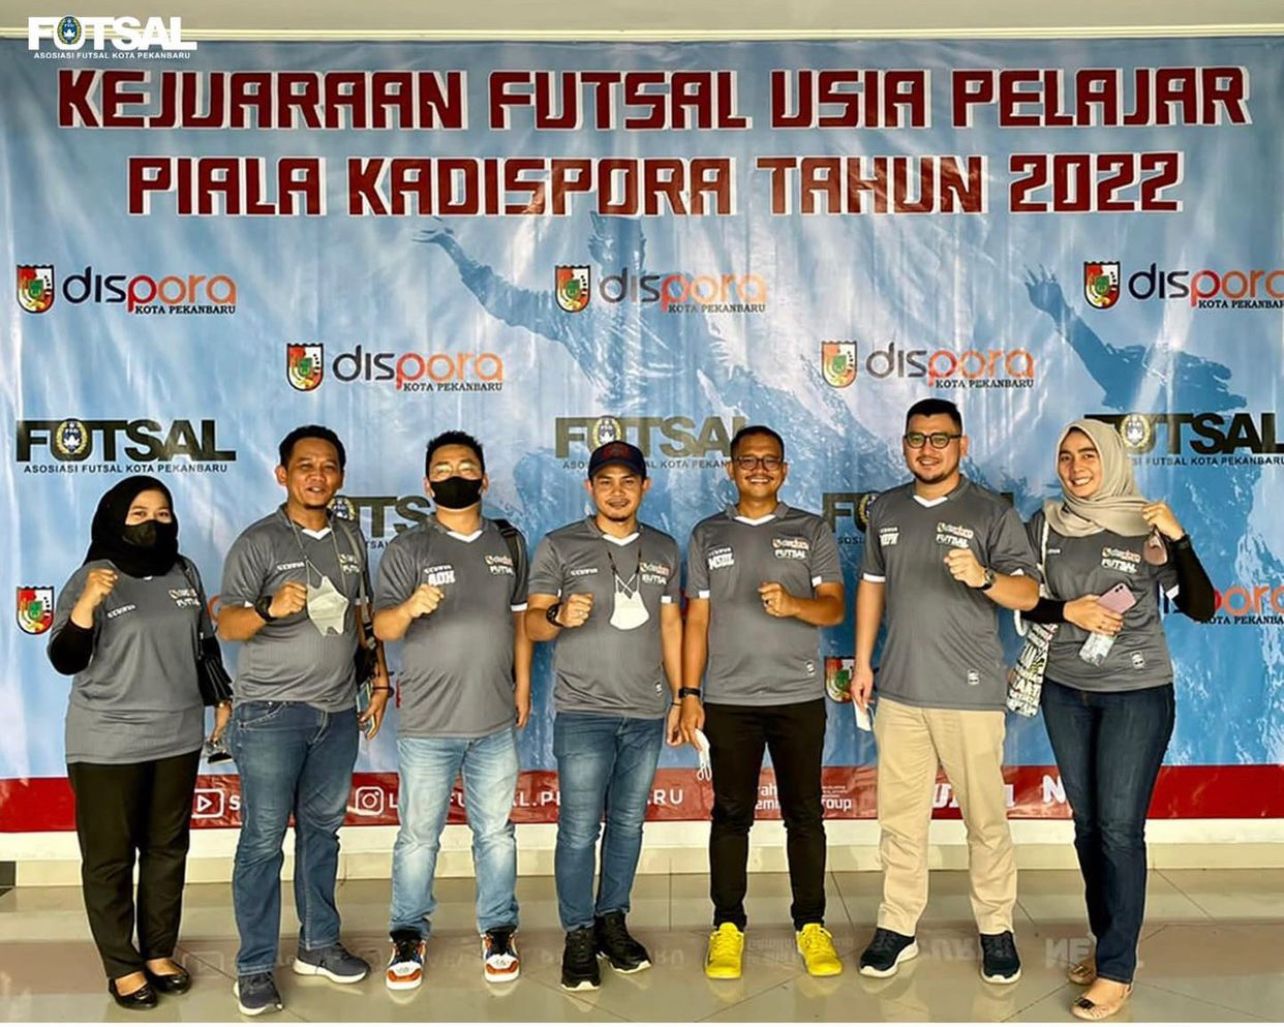 Momen Foto bersama panitia Kejuaran Futsal pelajar Piala Kadispora Pekanbaru